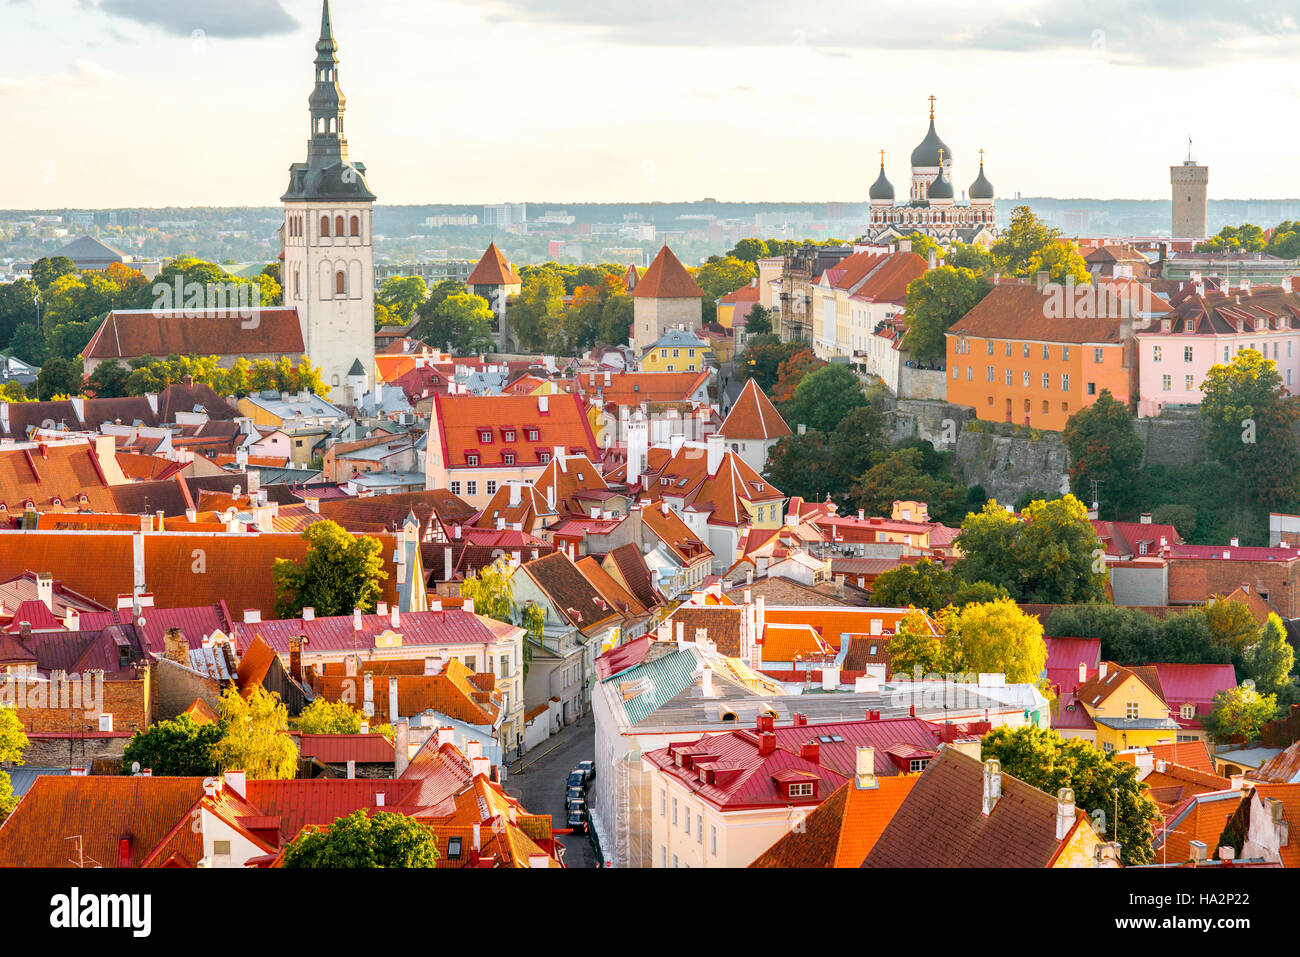 Tallinn old town Stock Photo